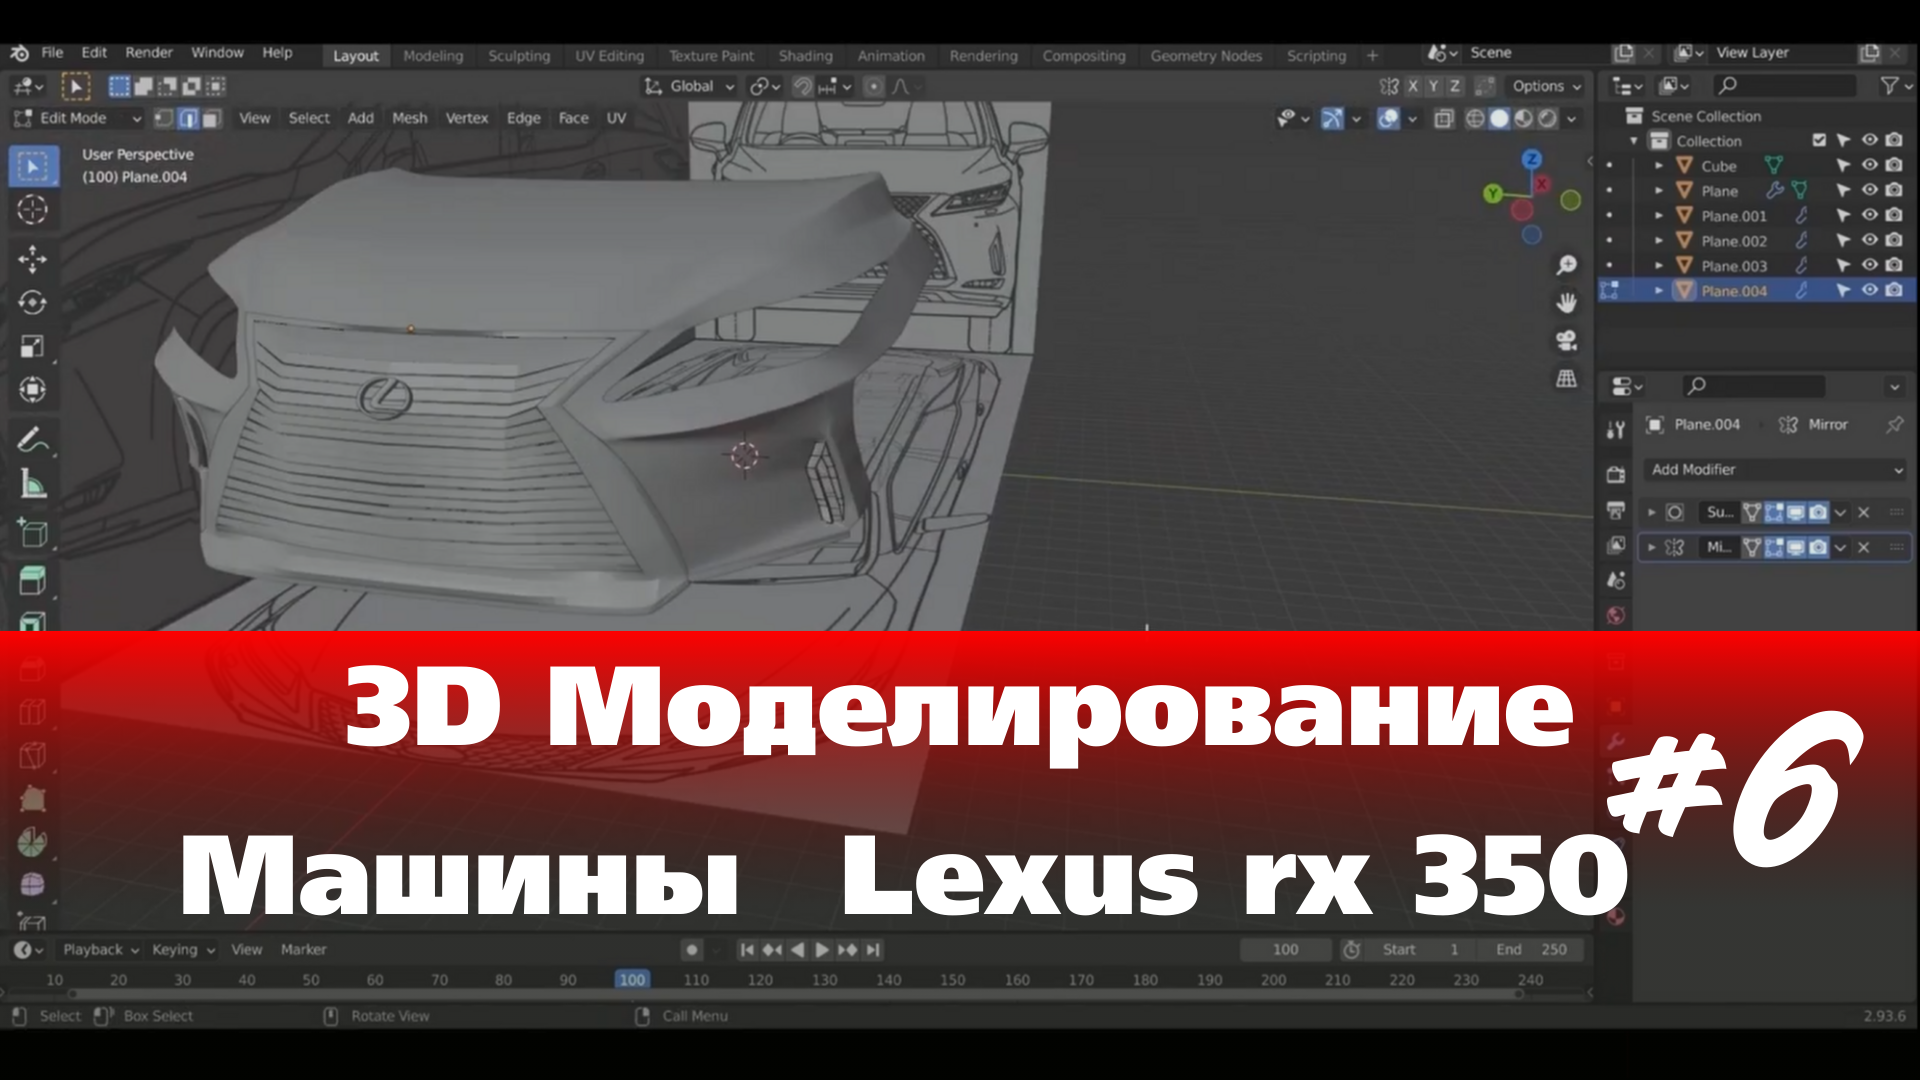 3D Моделирование Машины в Blender  - Lexus rx 350  часть 6 #Blender